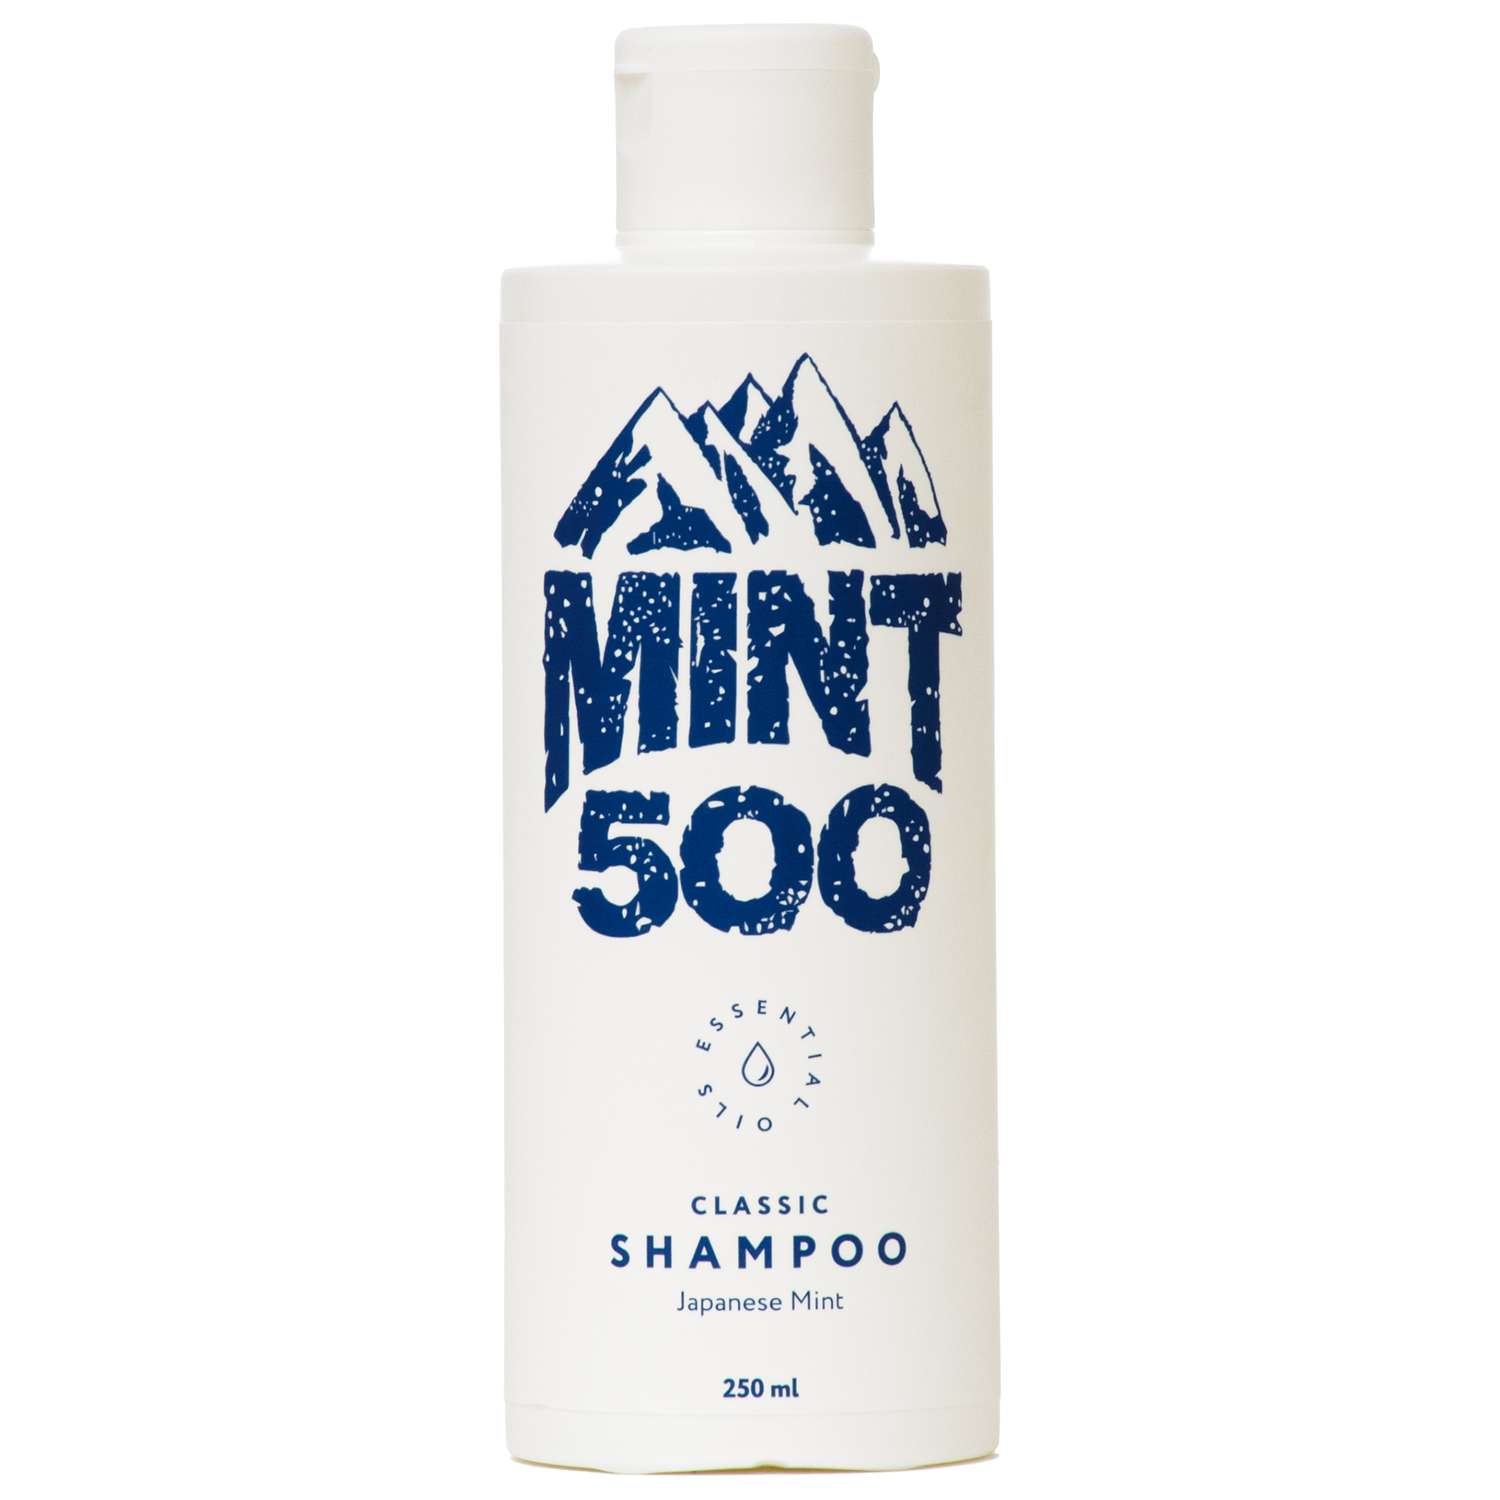 Шампунь Mint500 классический шампунь 250 мл - фото 1